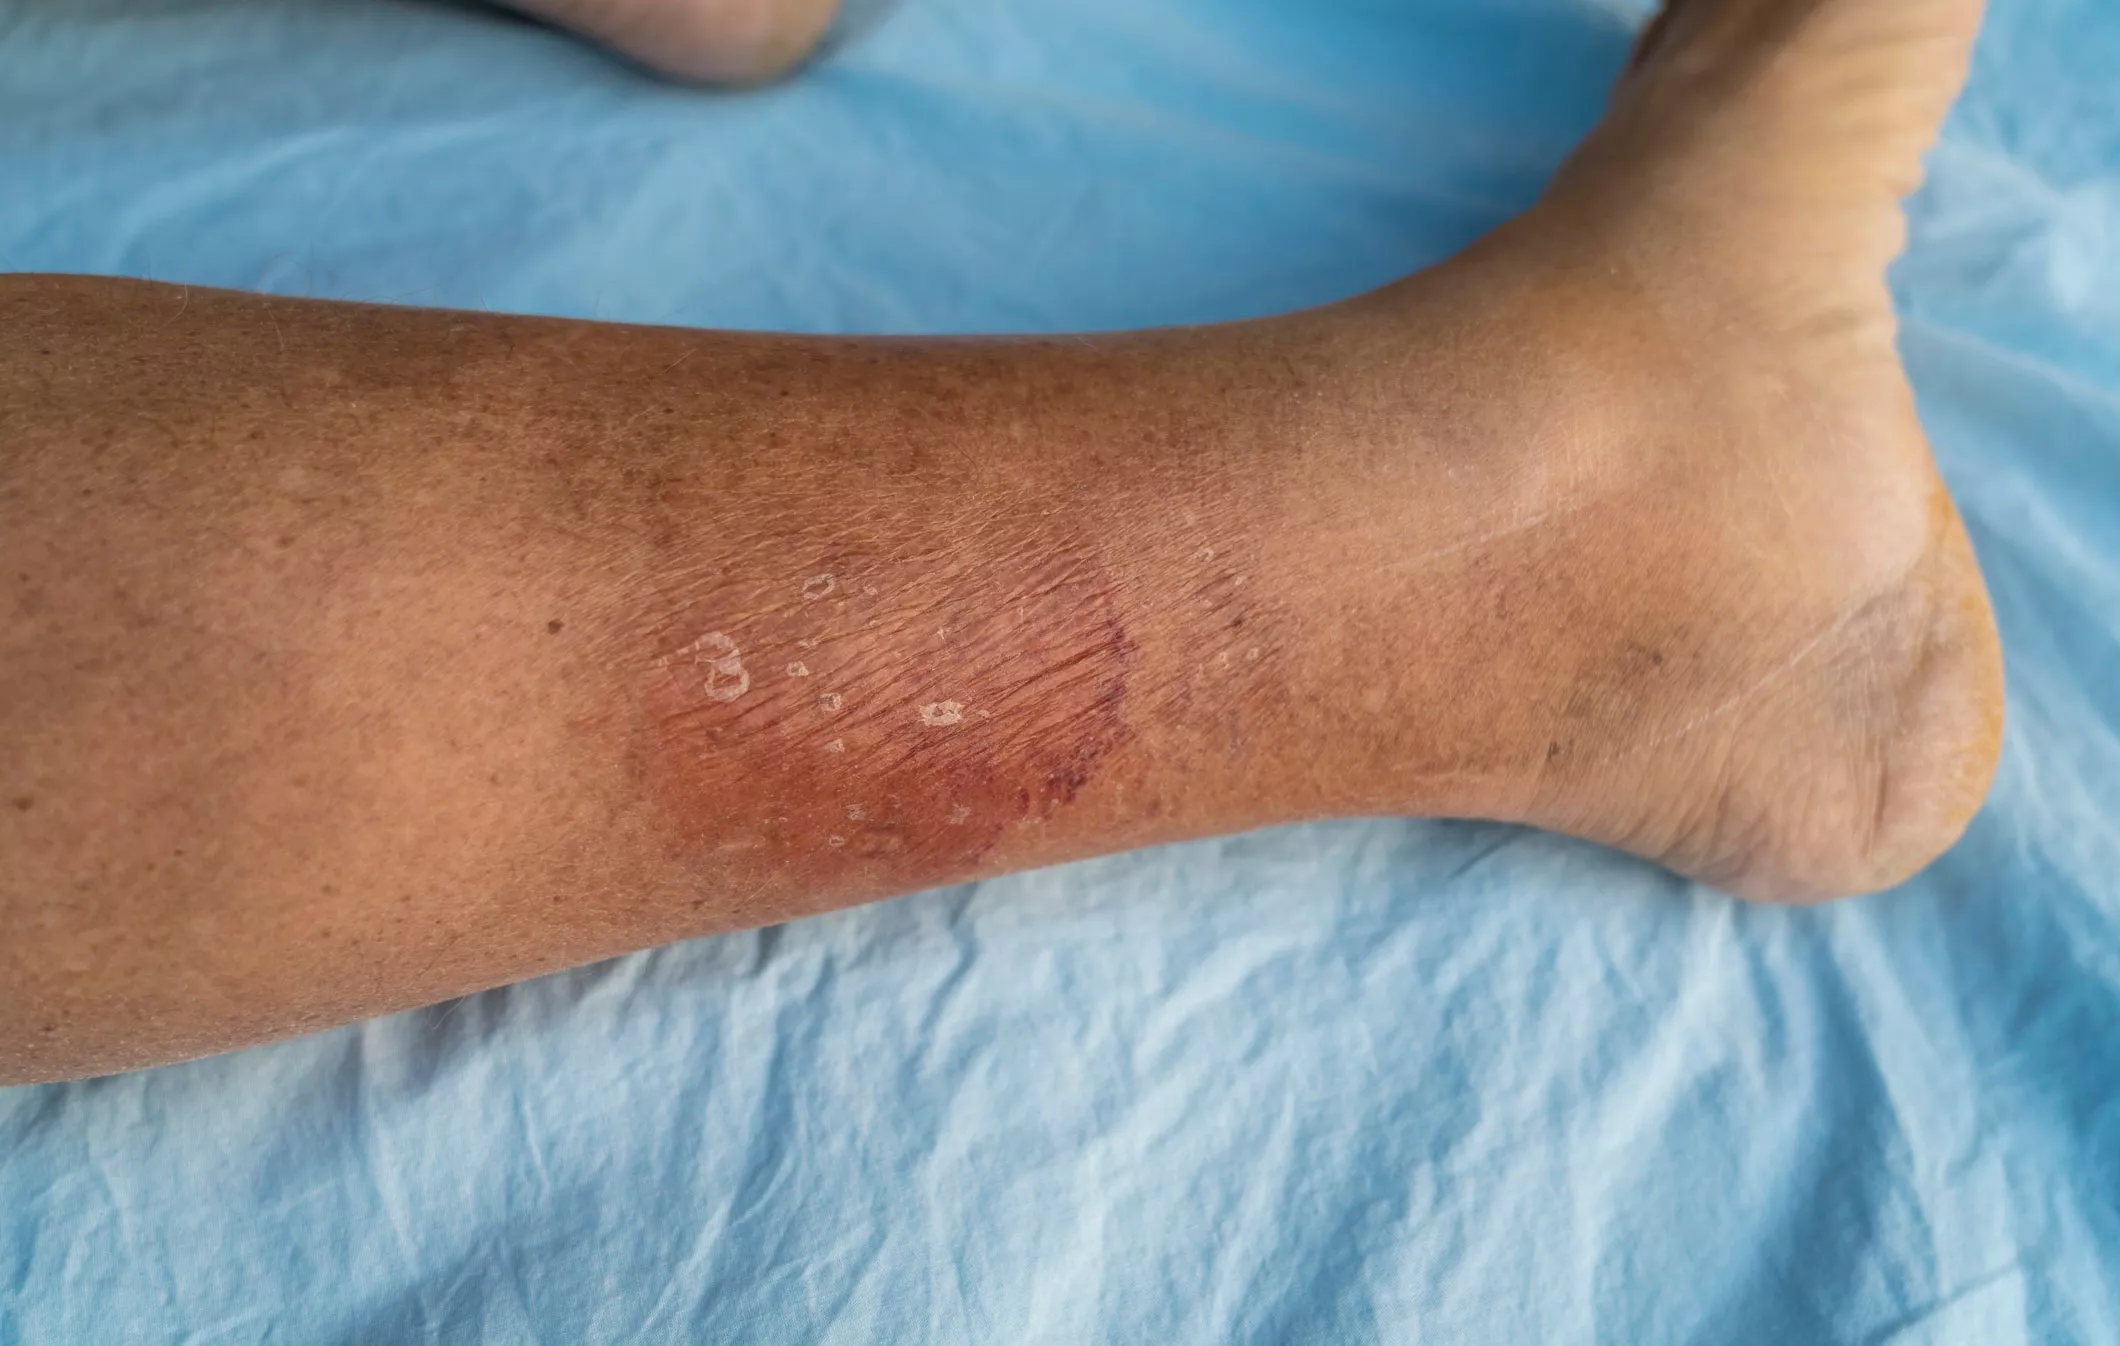 Ruusu esiintyy usein jalassa – näistä infektion oireista heti lääkäriin